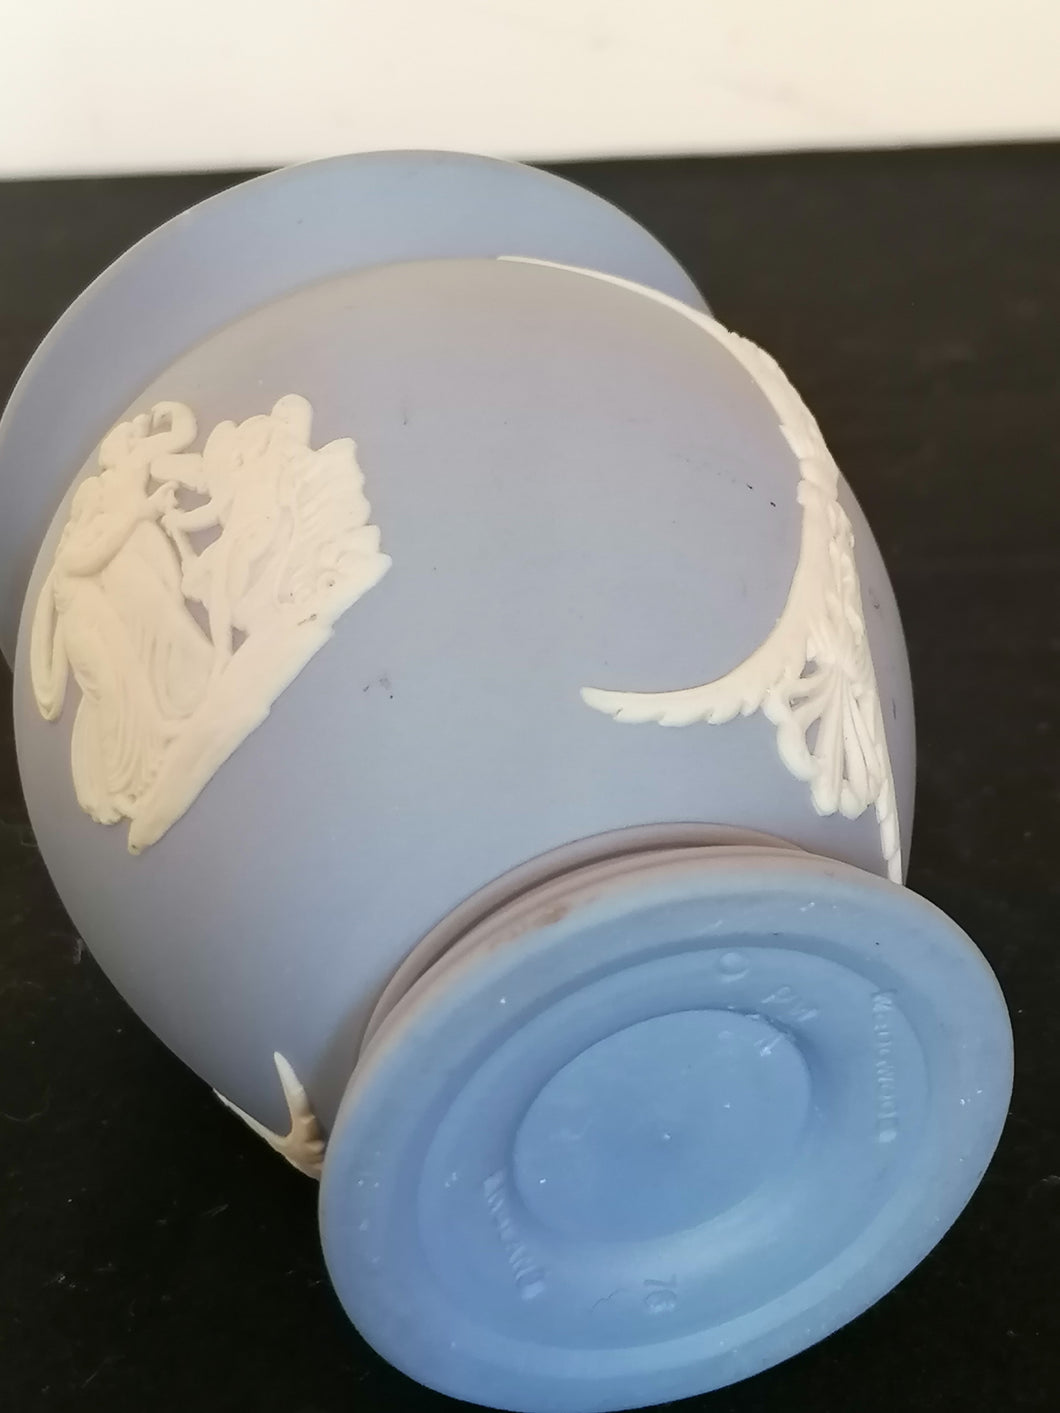 Petit vase en porcelaine bleu de Wedgwood